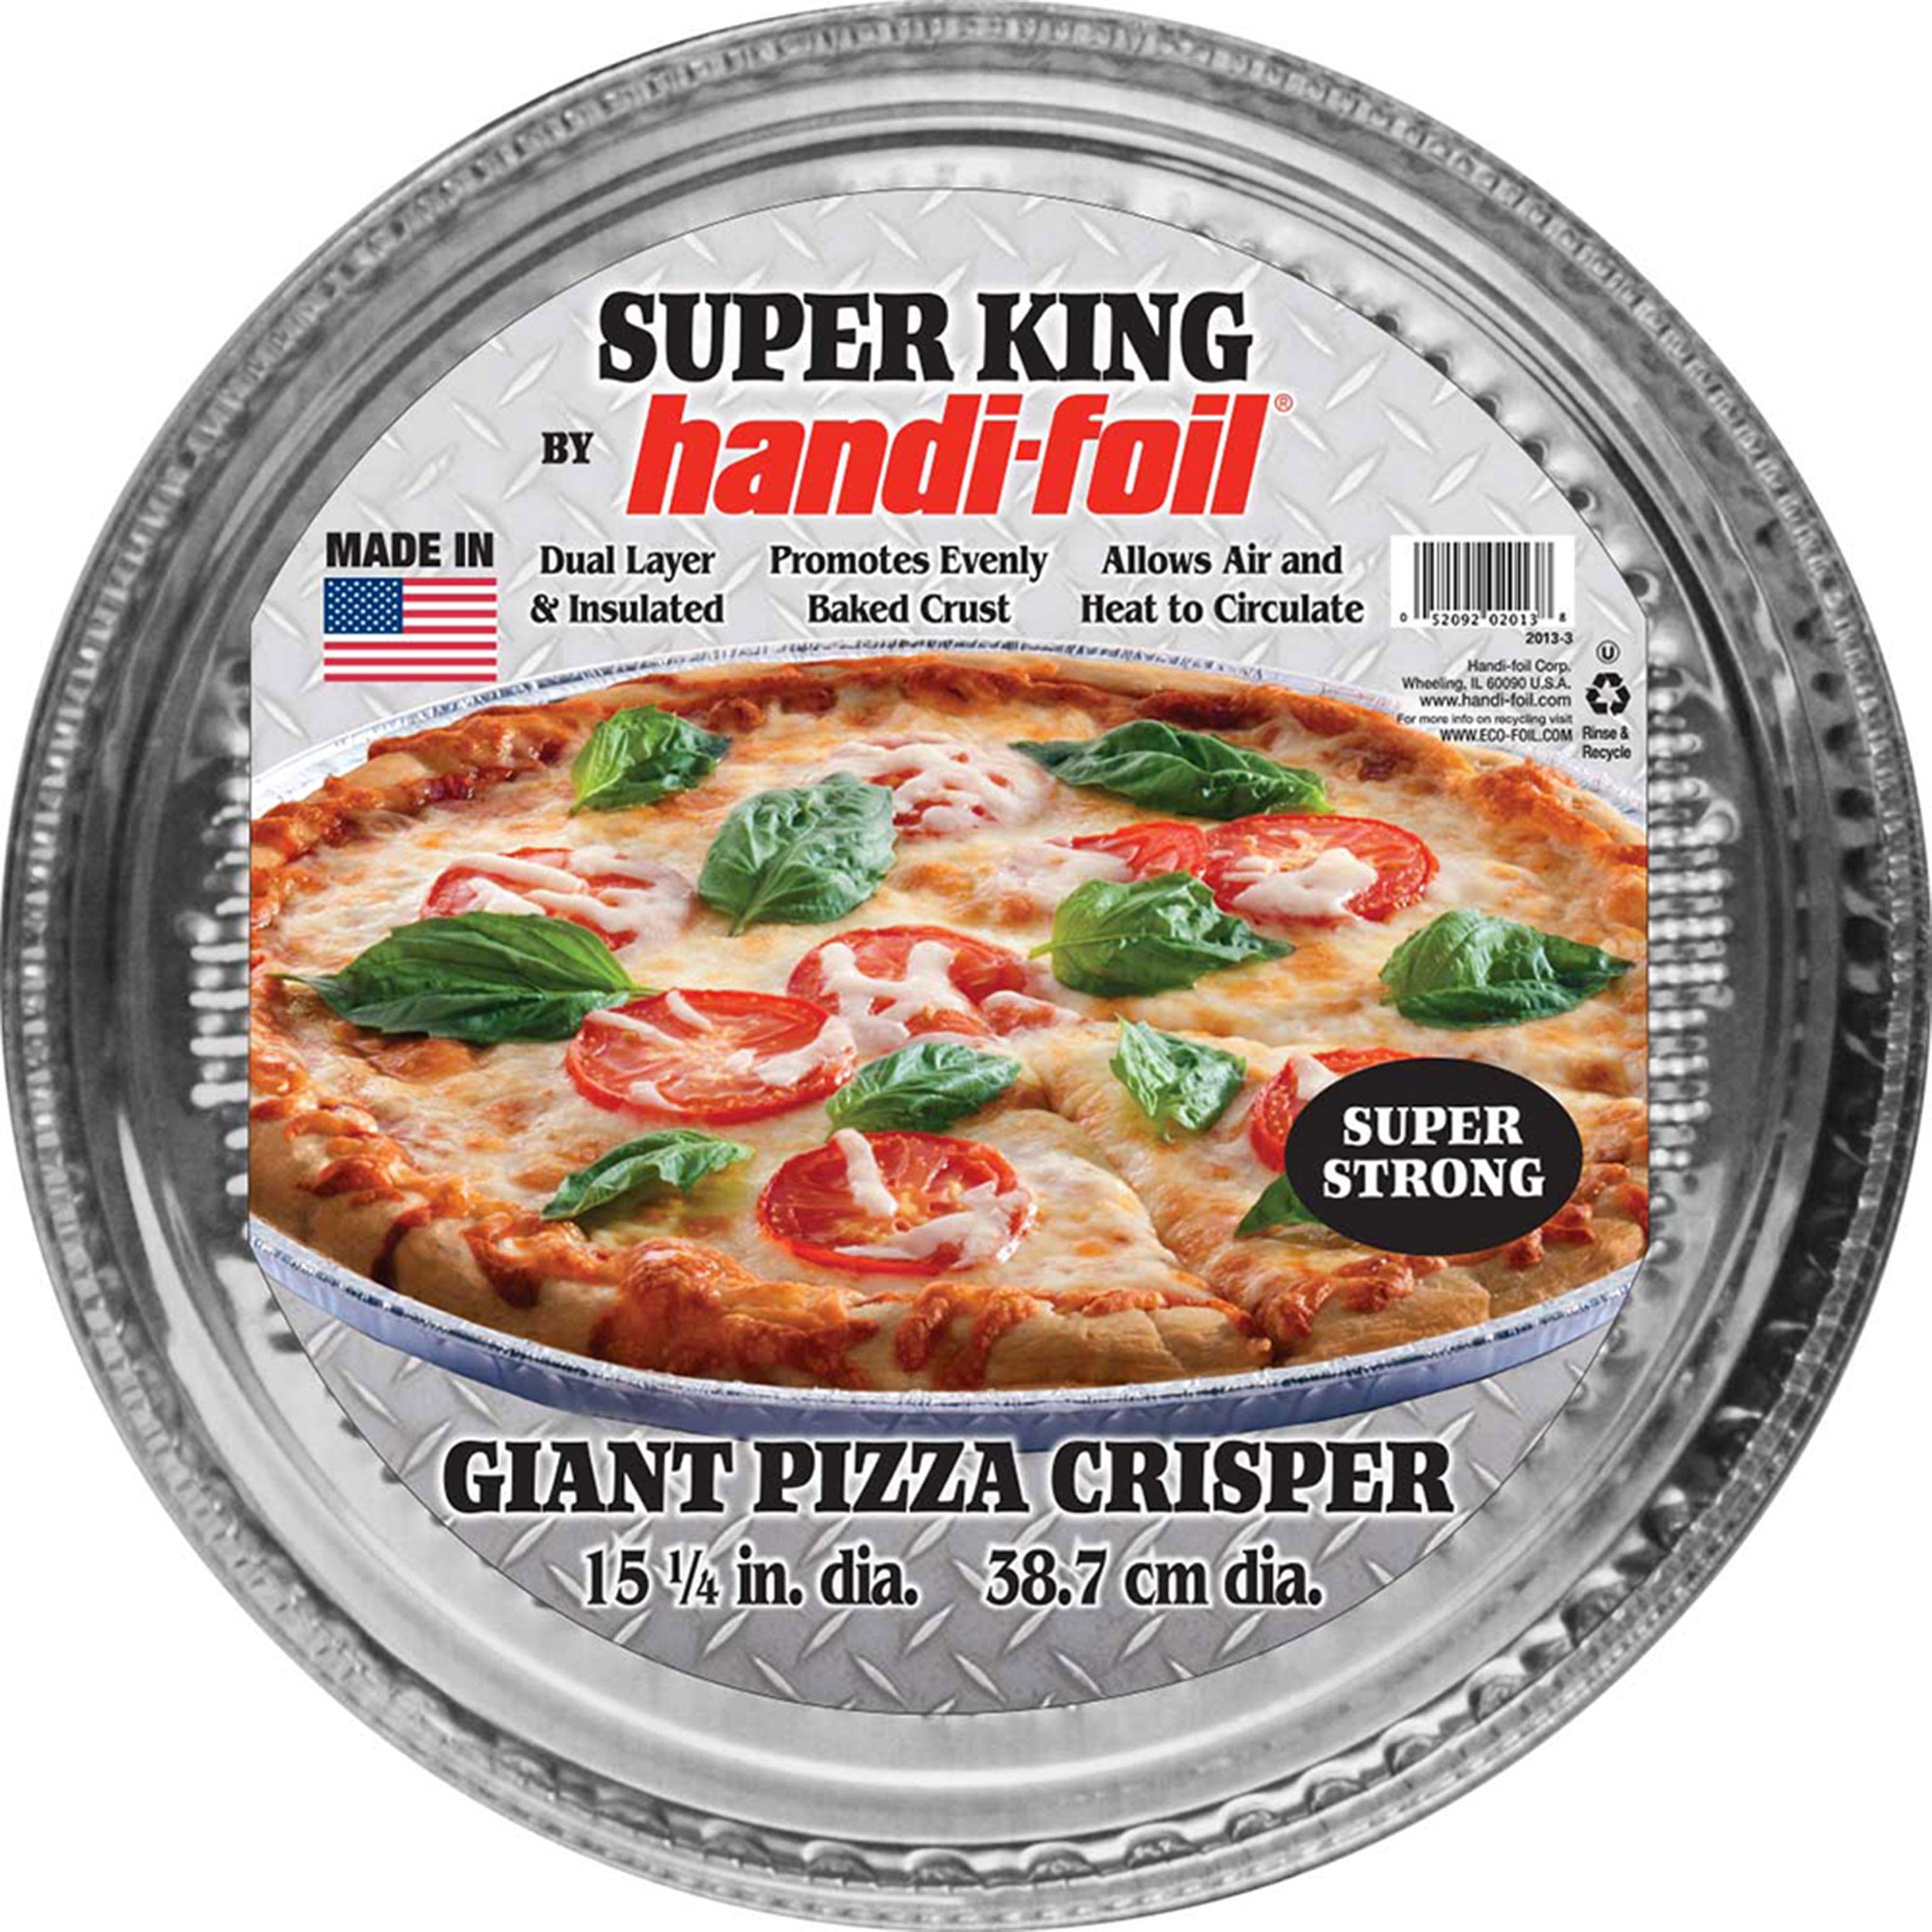 Conheça mais sobre a Super Pizza Pan - Super Pizza Pan